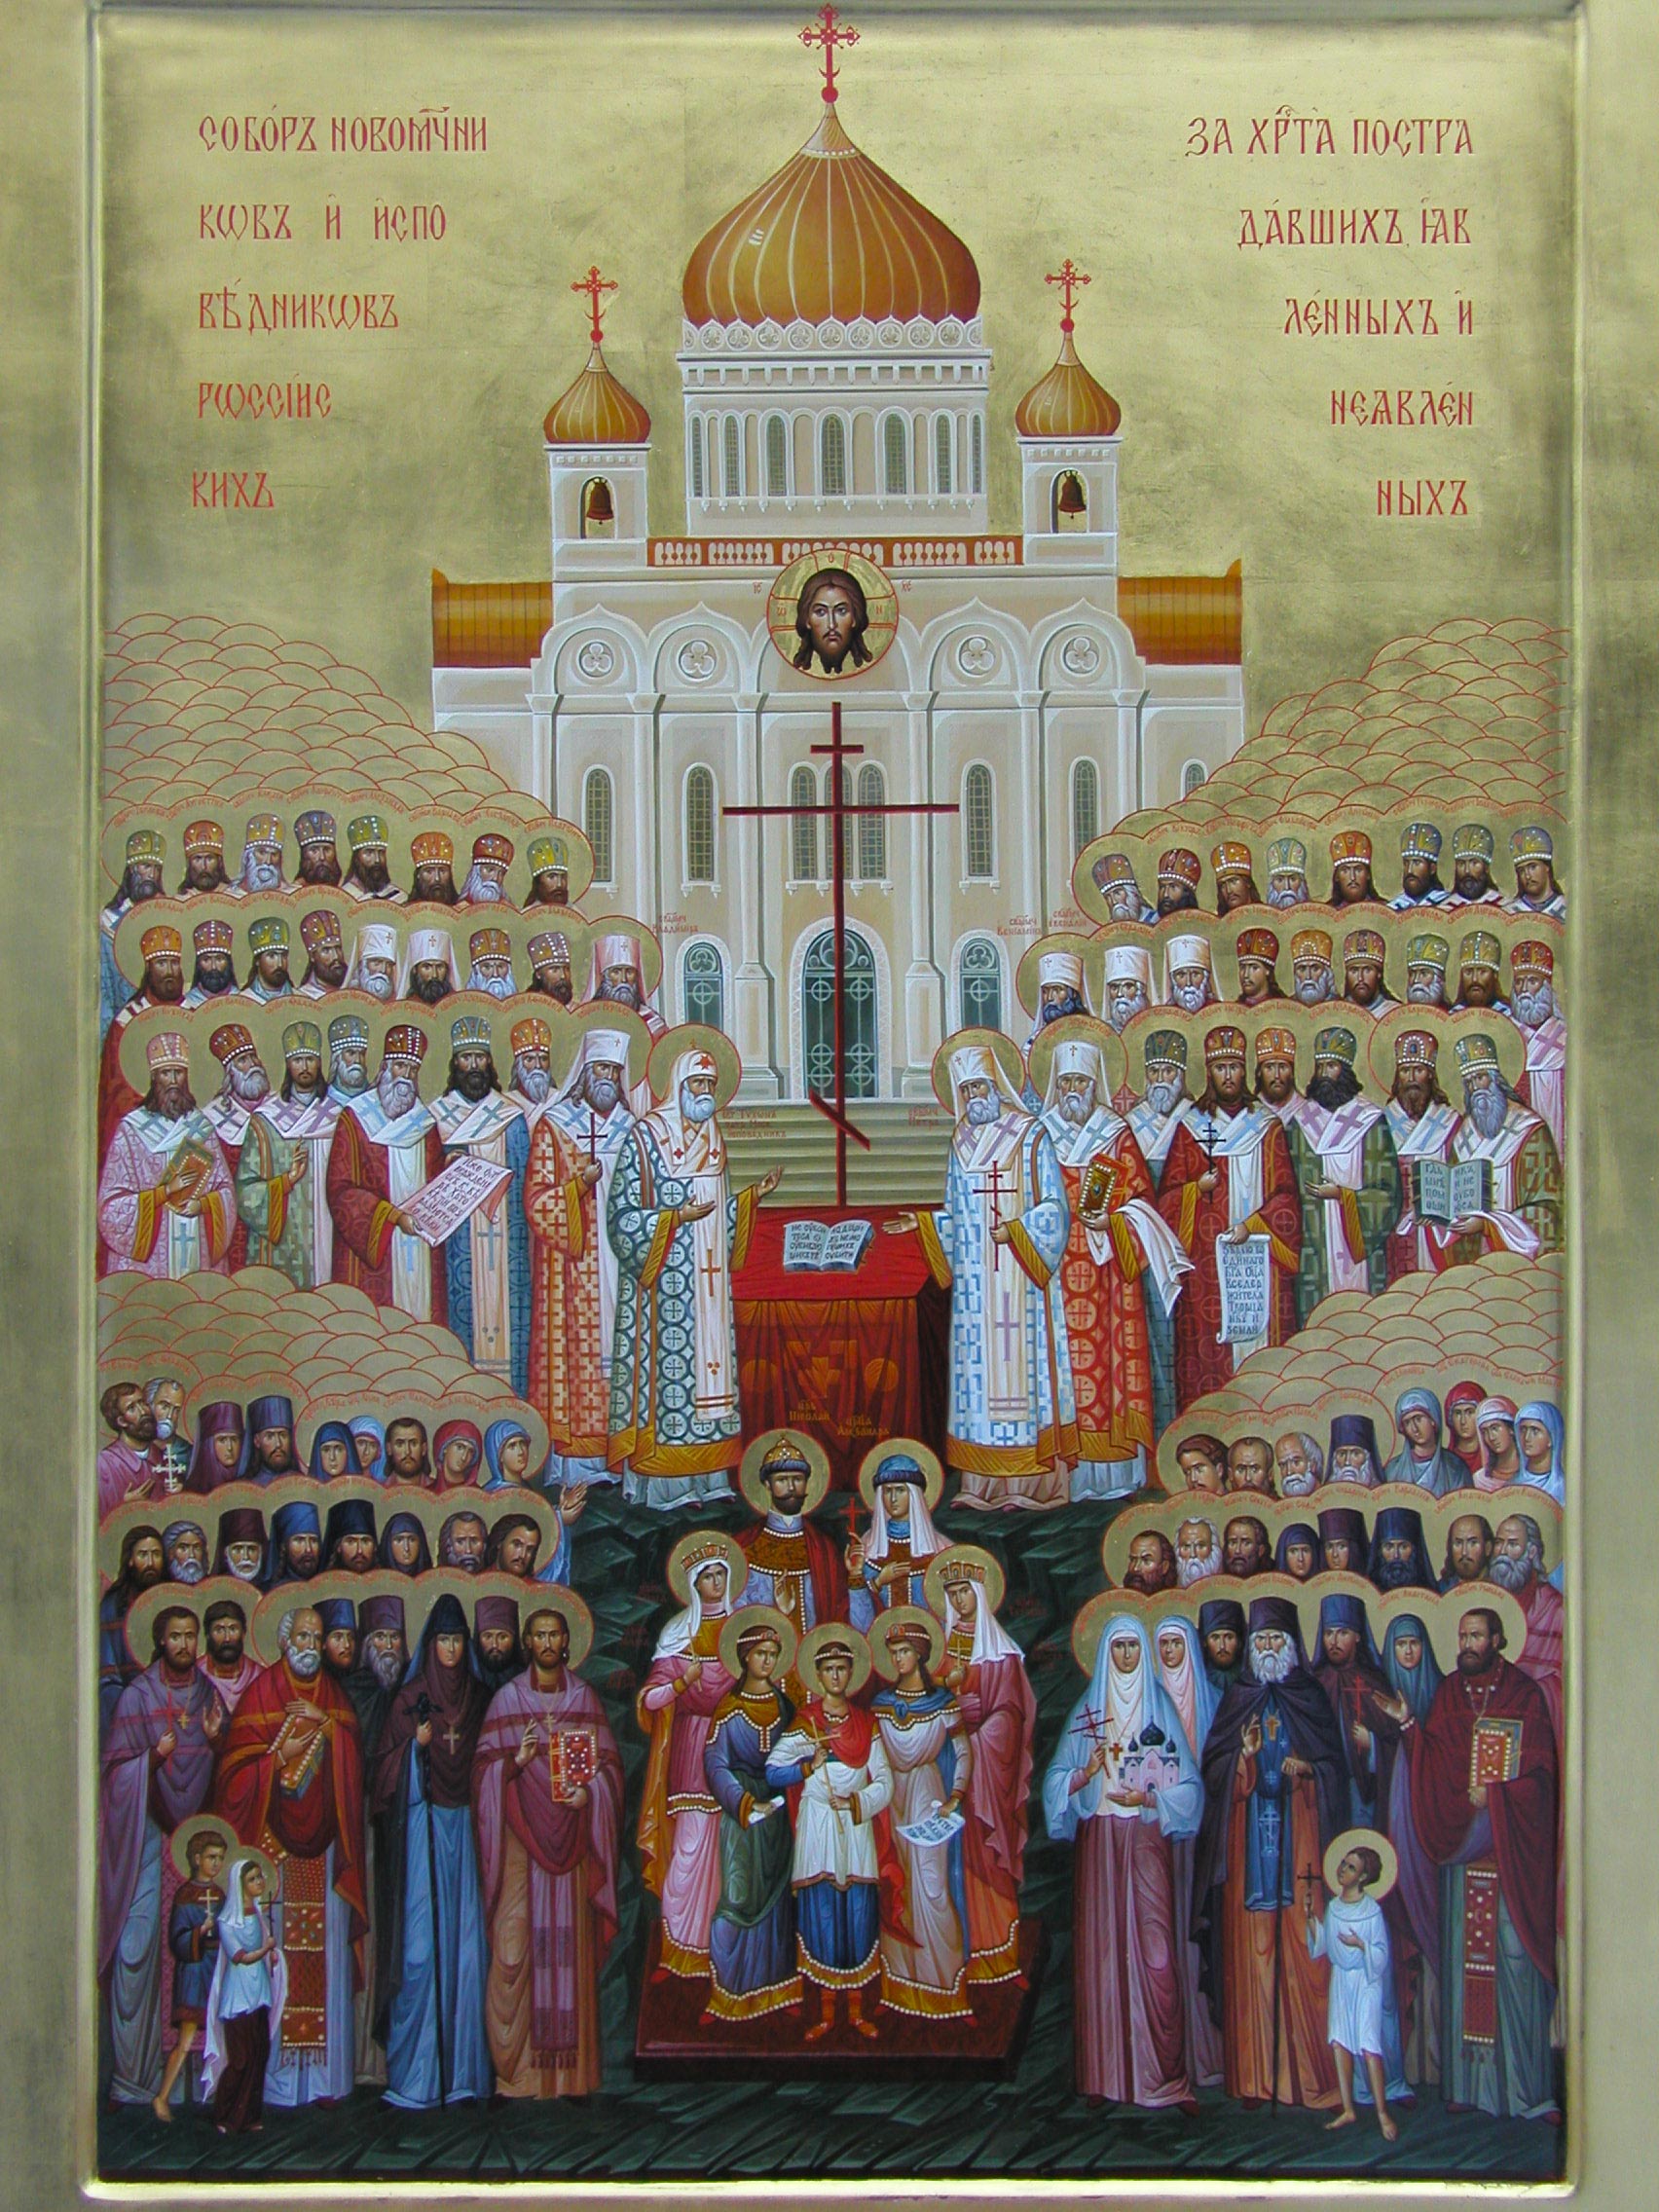 Dimanche 6 février 2022 — Synaxe des saints nouveaux martyrs et confesseurs de l’Eglise russe